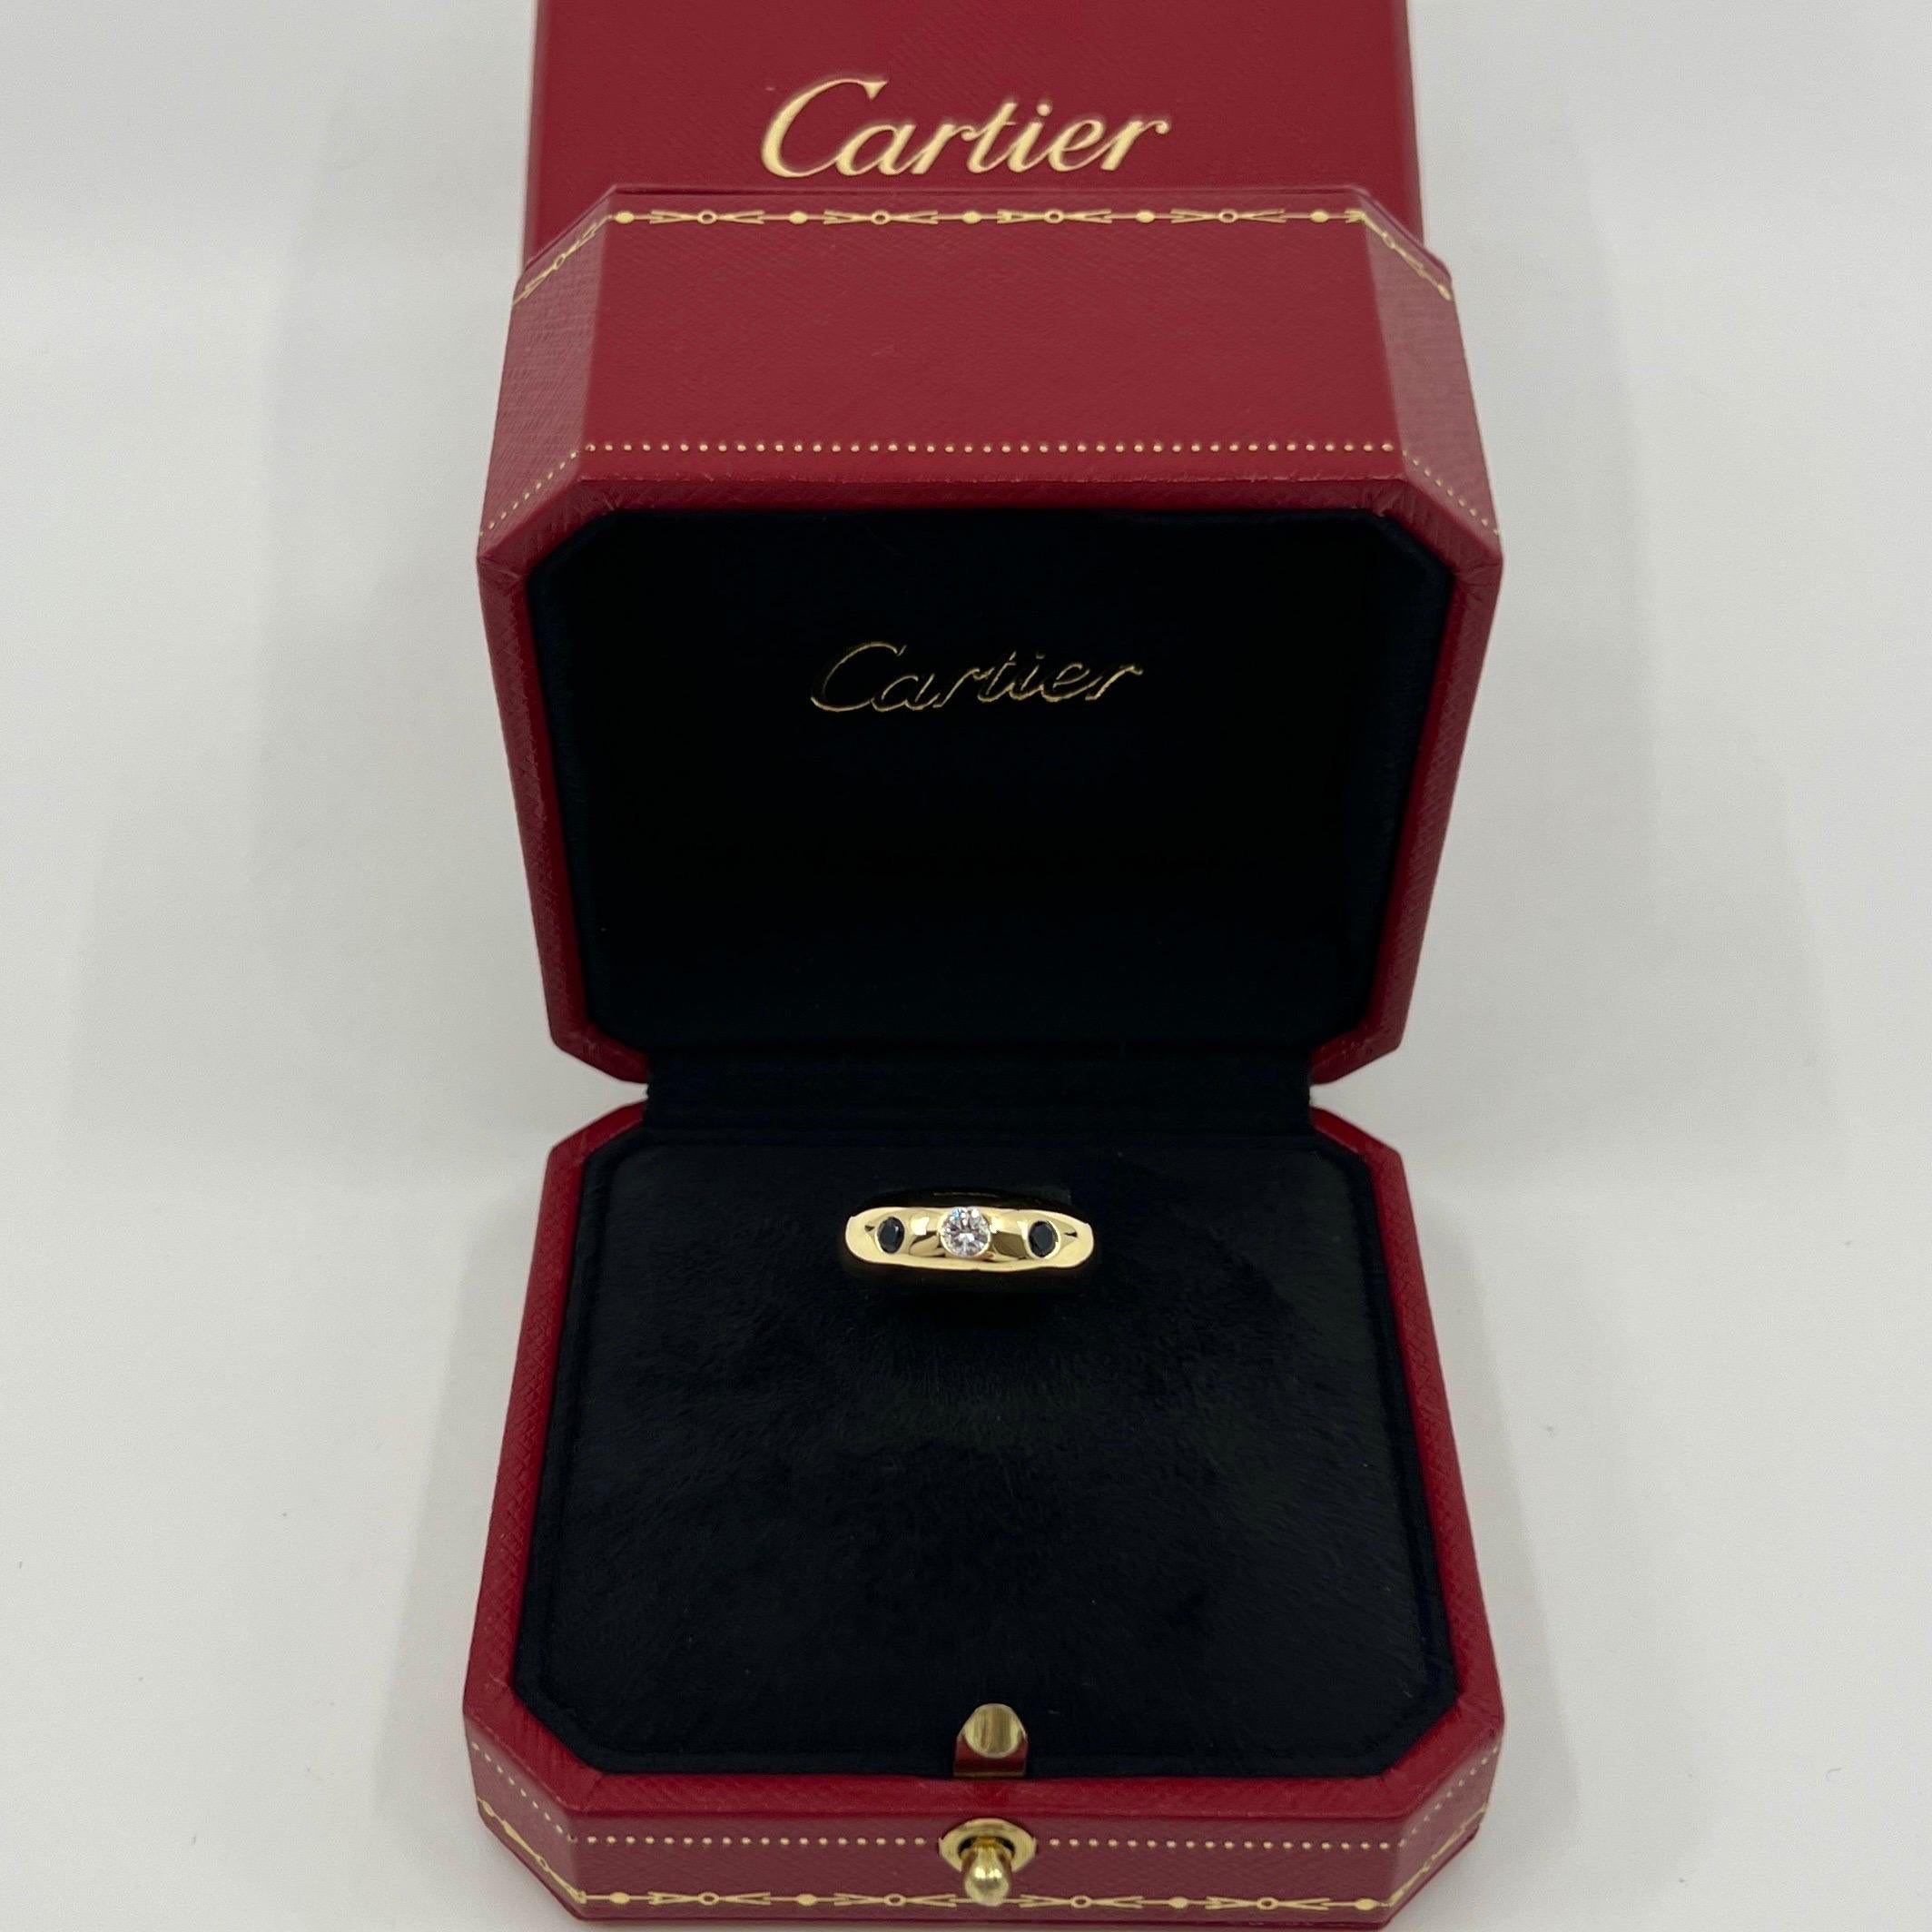 Vintage Cartier Diamant und blauer Saphir 18k Gelbgold Drei Stein Kuppel Ring.

Atemberaubende Gelbgold Cartier Ring mit einem schönen 3,5 mm Zentrum Diamant mit F / G Farbe und VVS Klarheit gesetzt. Dieser wird von 2 feinen tiefblauen Saphiren von